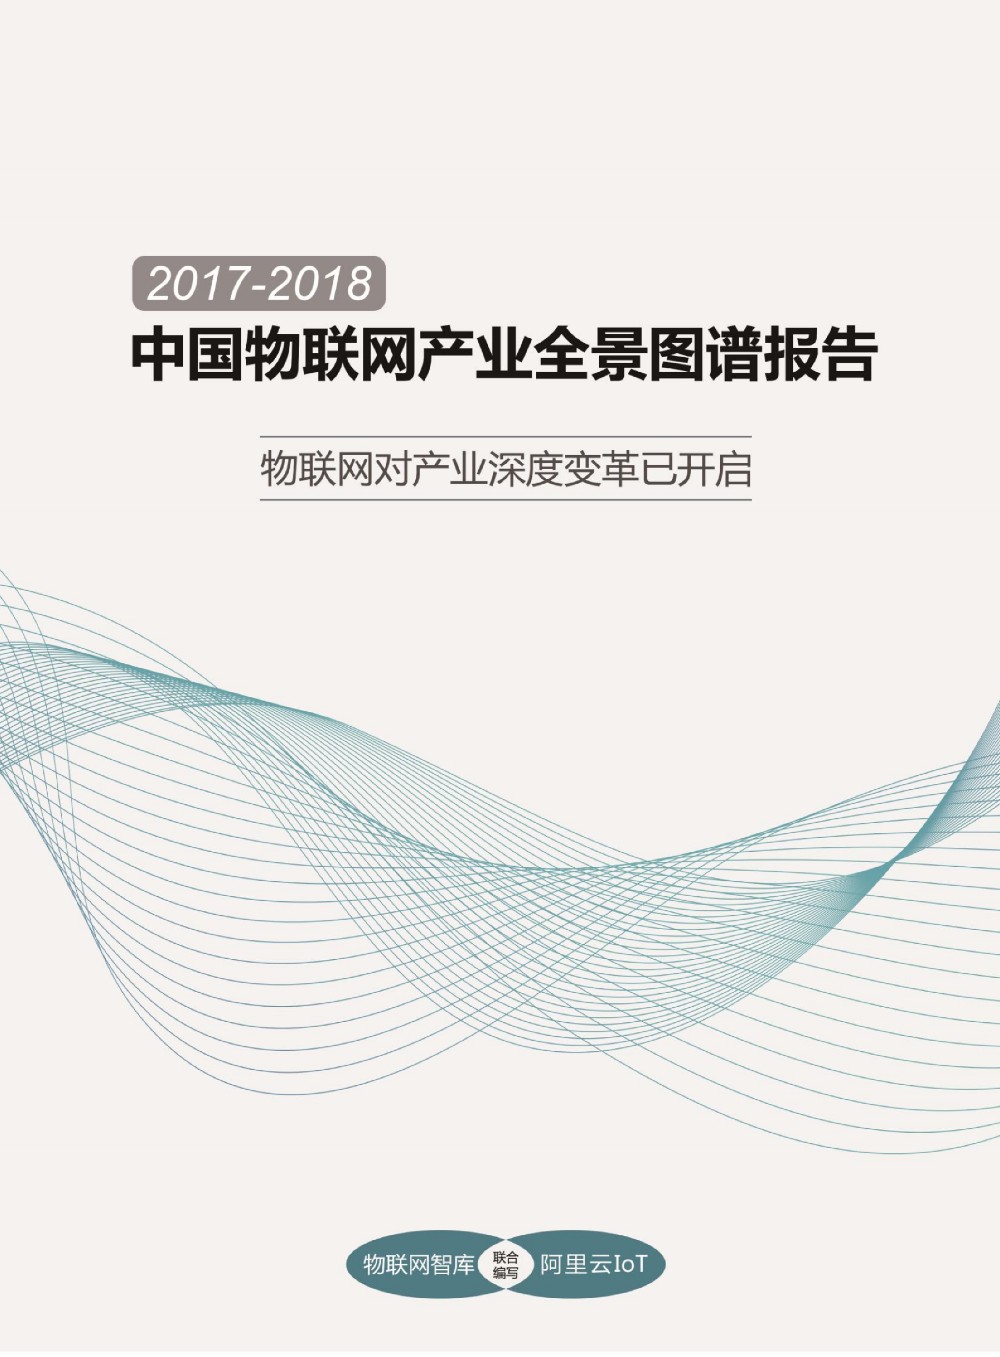 2017-2018物联网产业全景图完整版_00